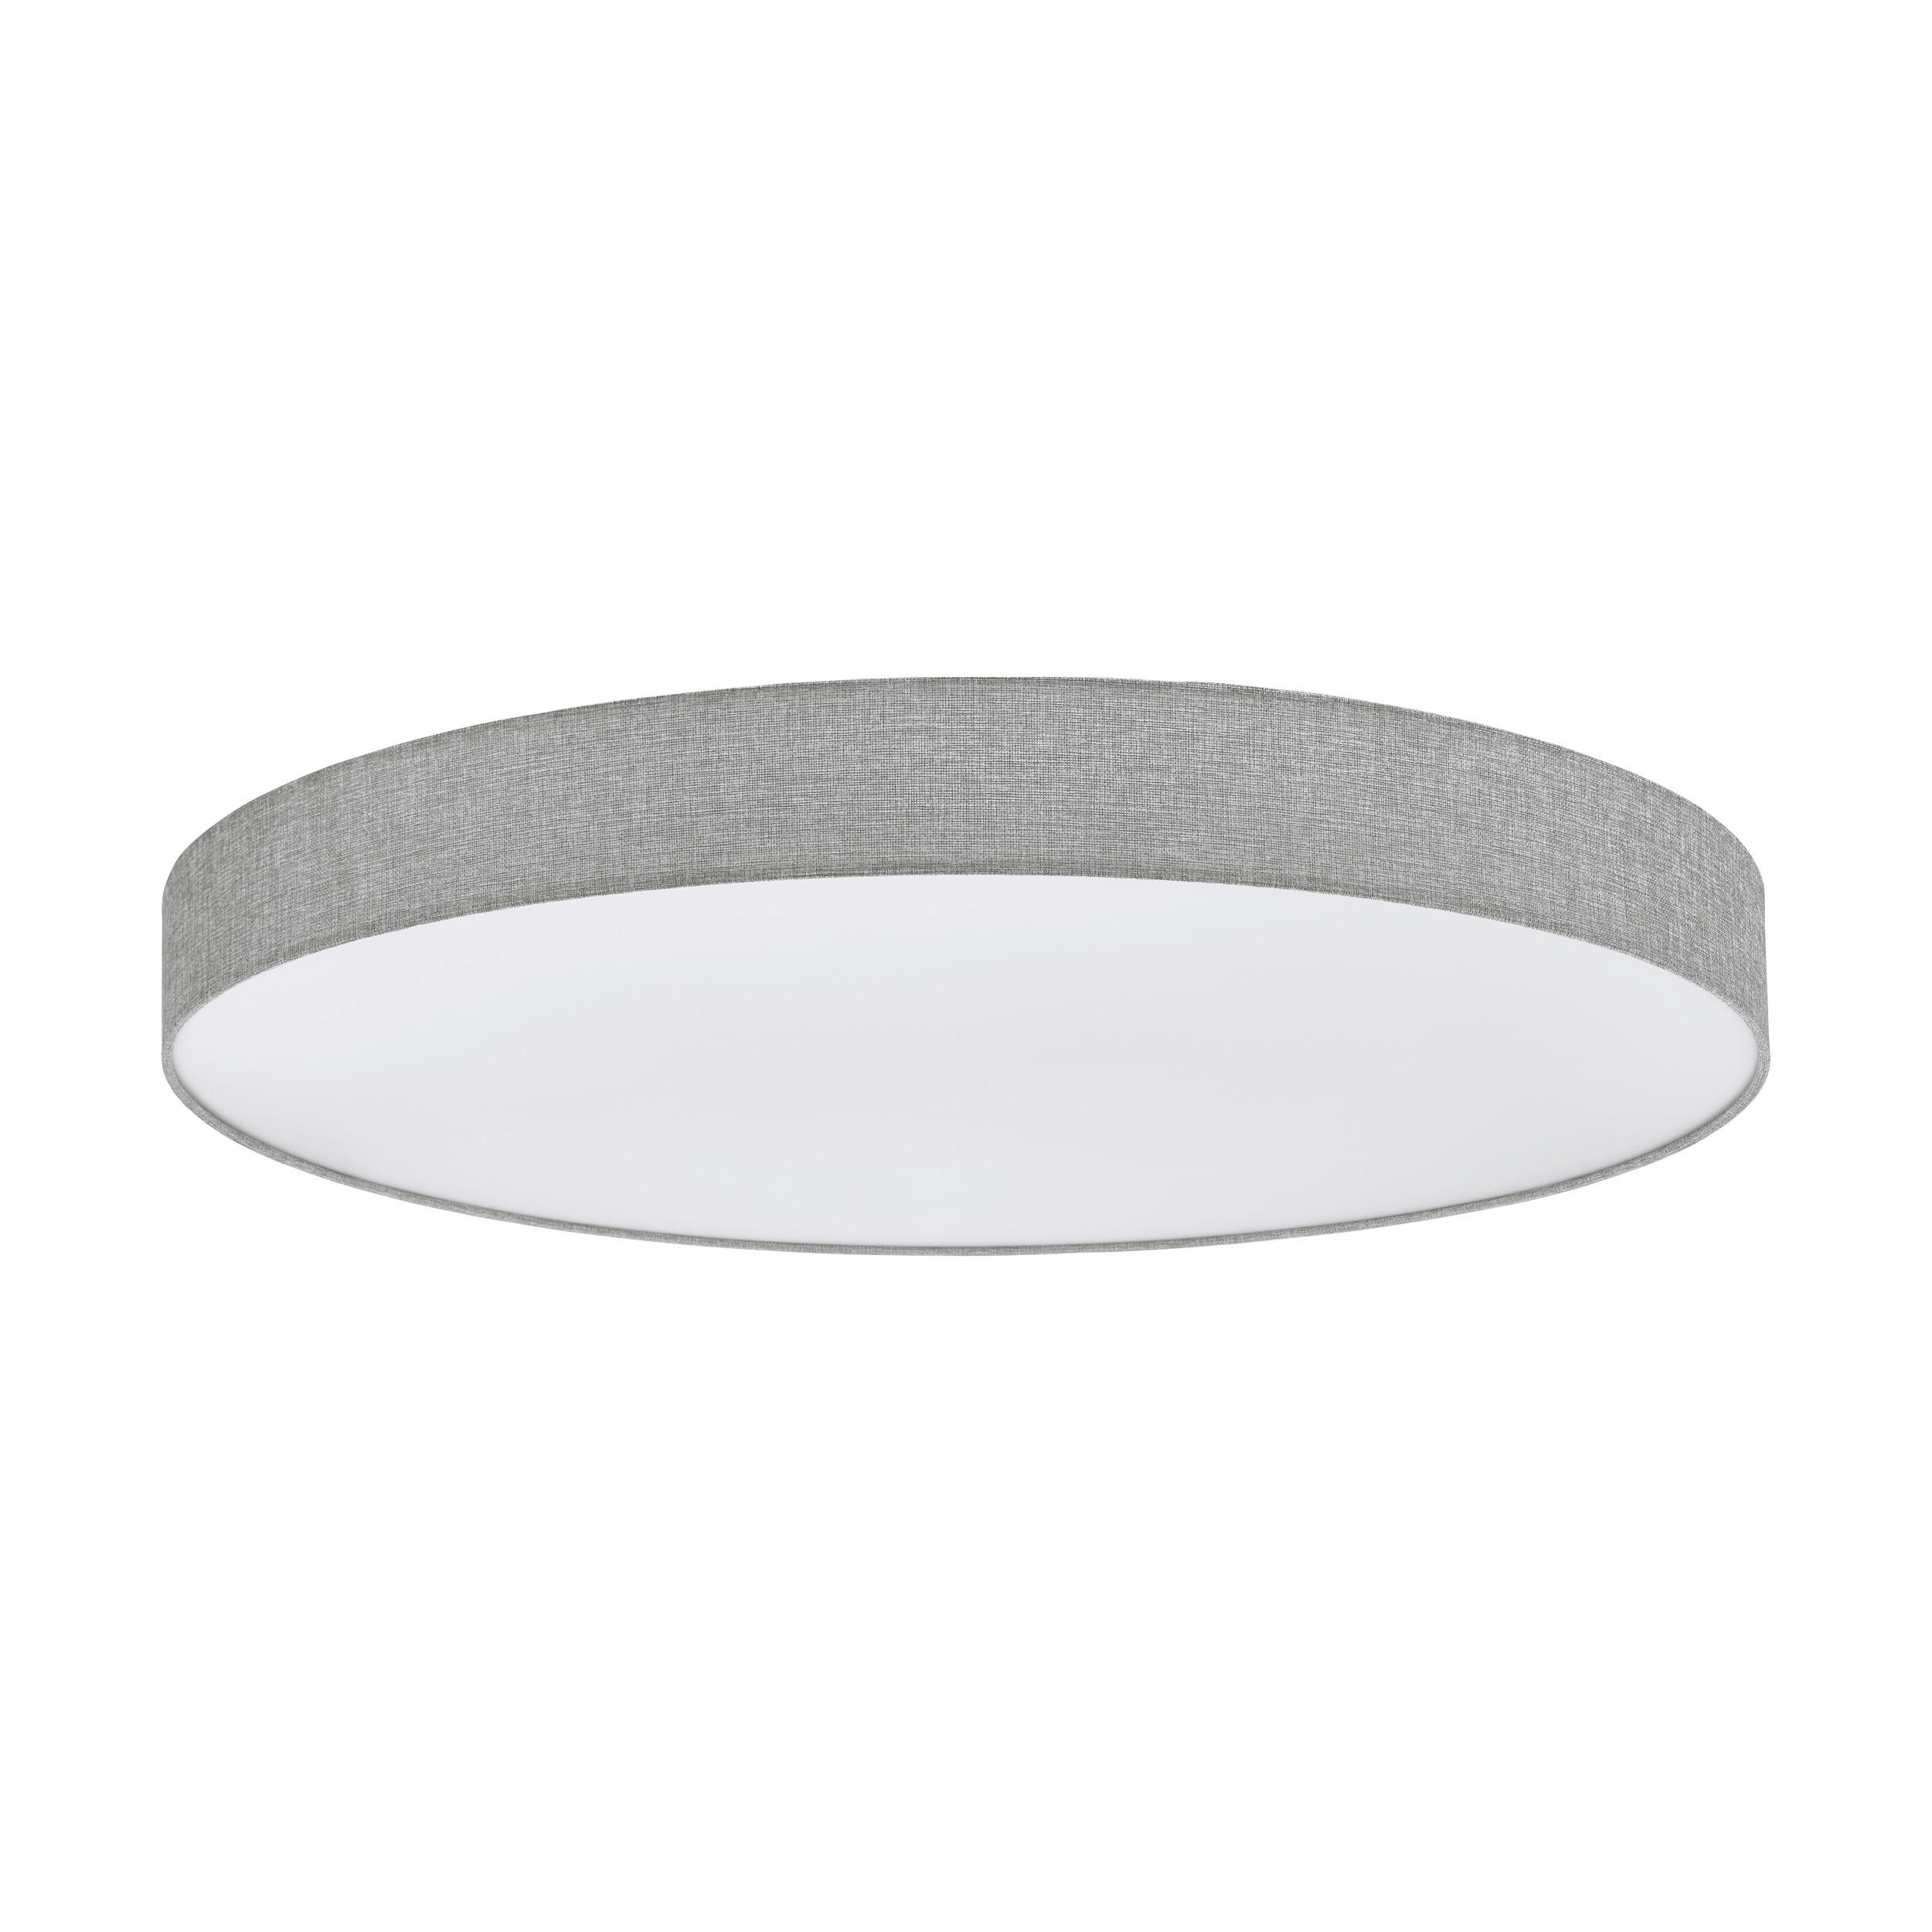 LED-DECKENLEUCHTE Romaro-Z 57/15 cm   - Weiß/Grau, Basics, Kunststoff/Textil (57/15cm) - Eglo